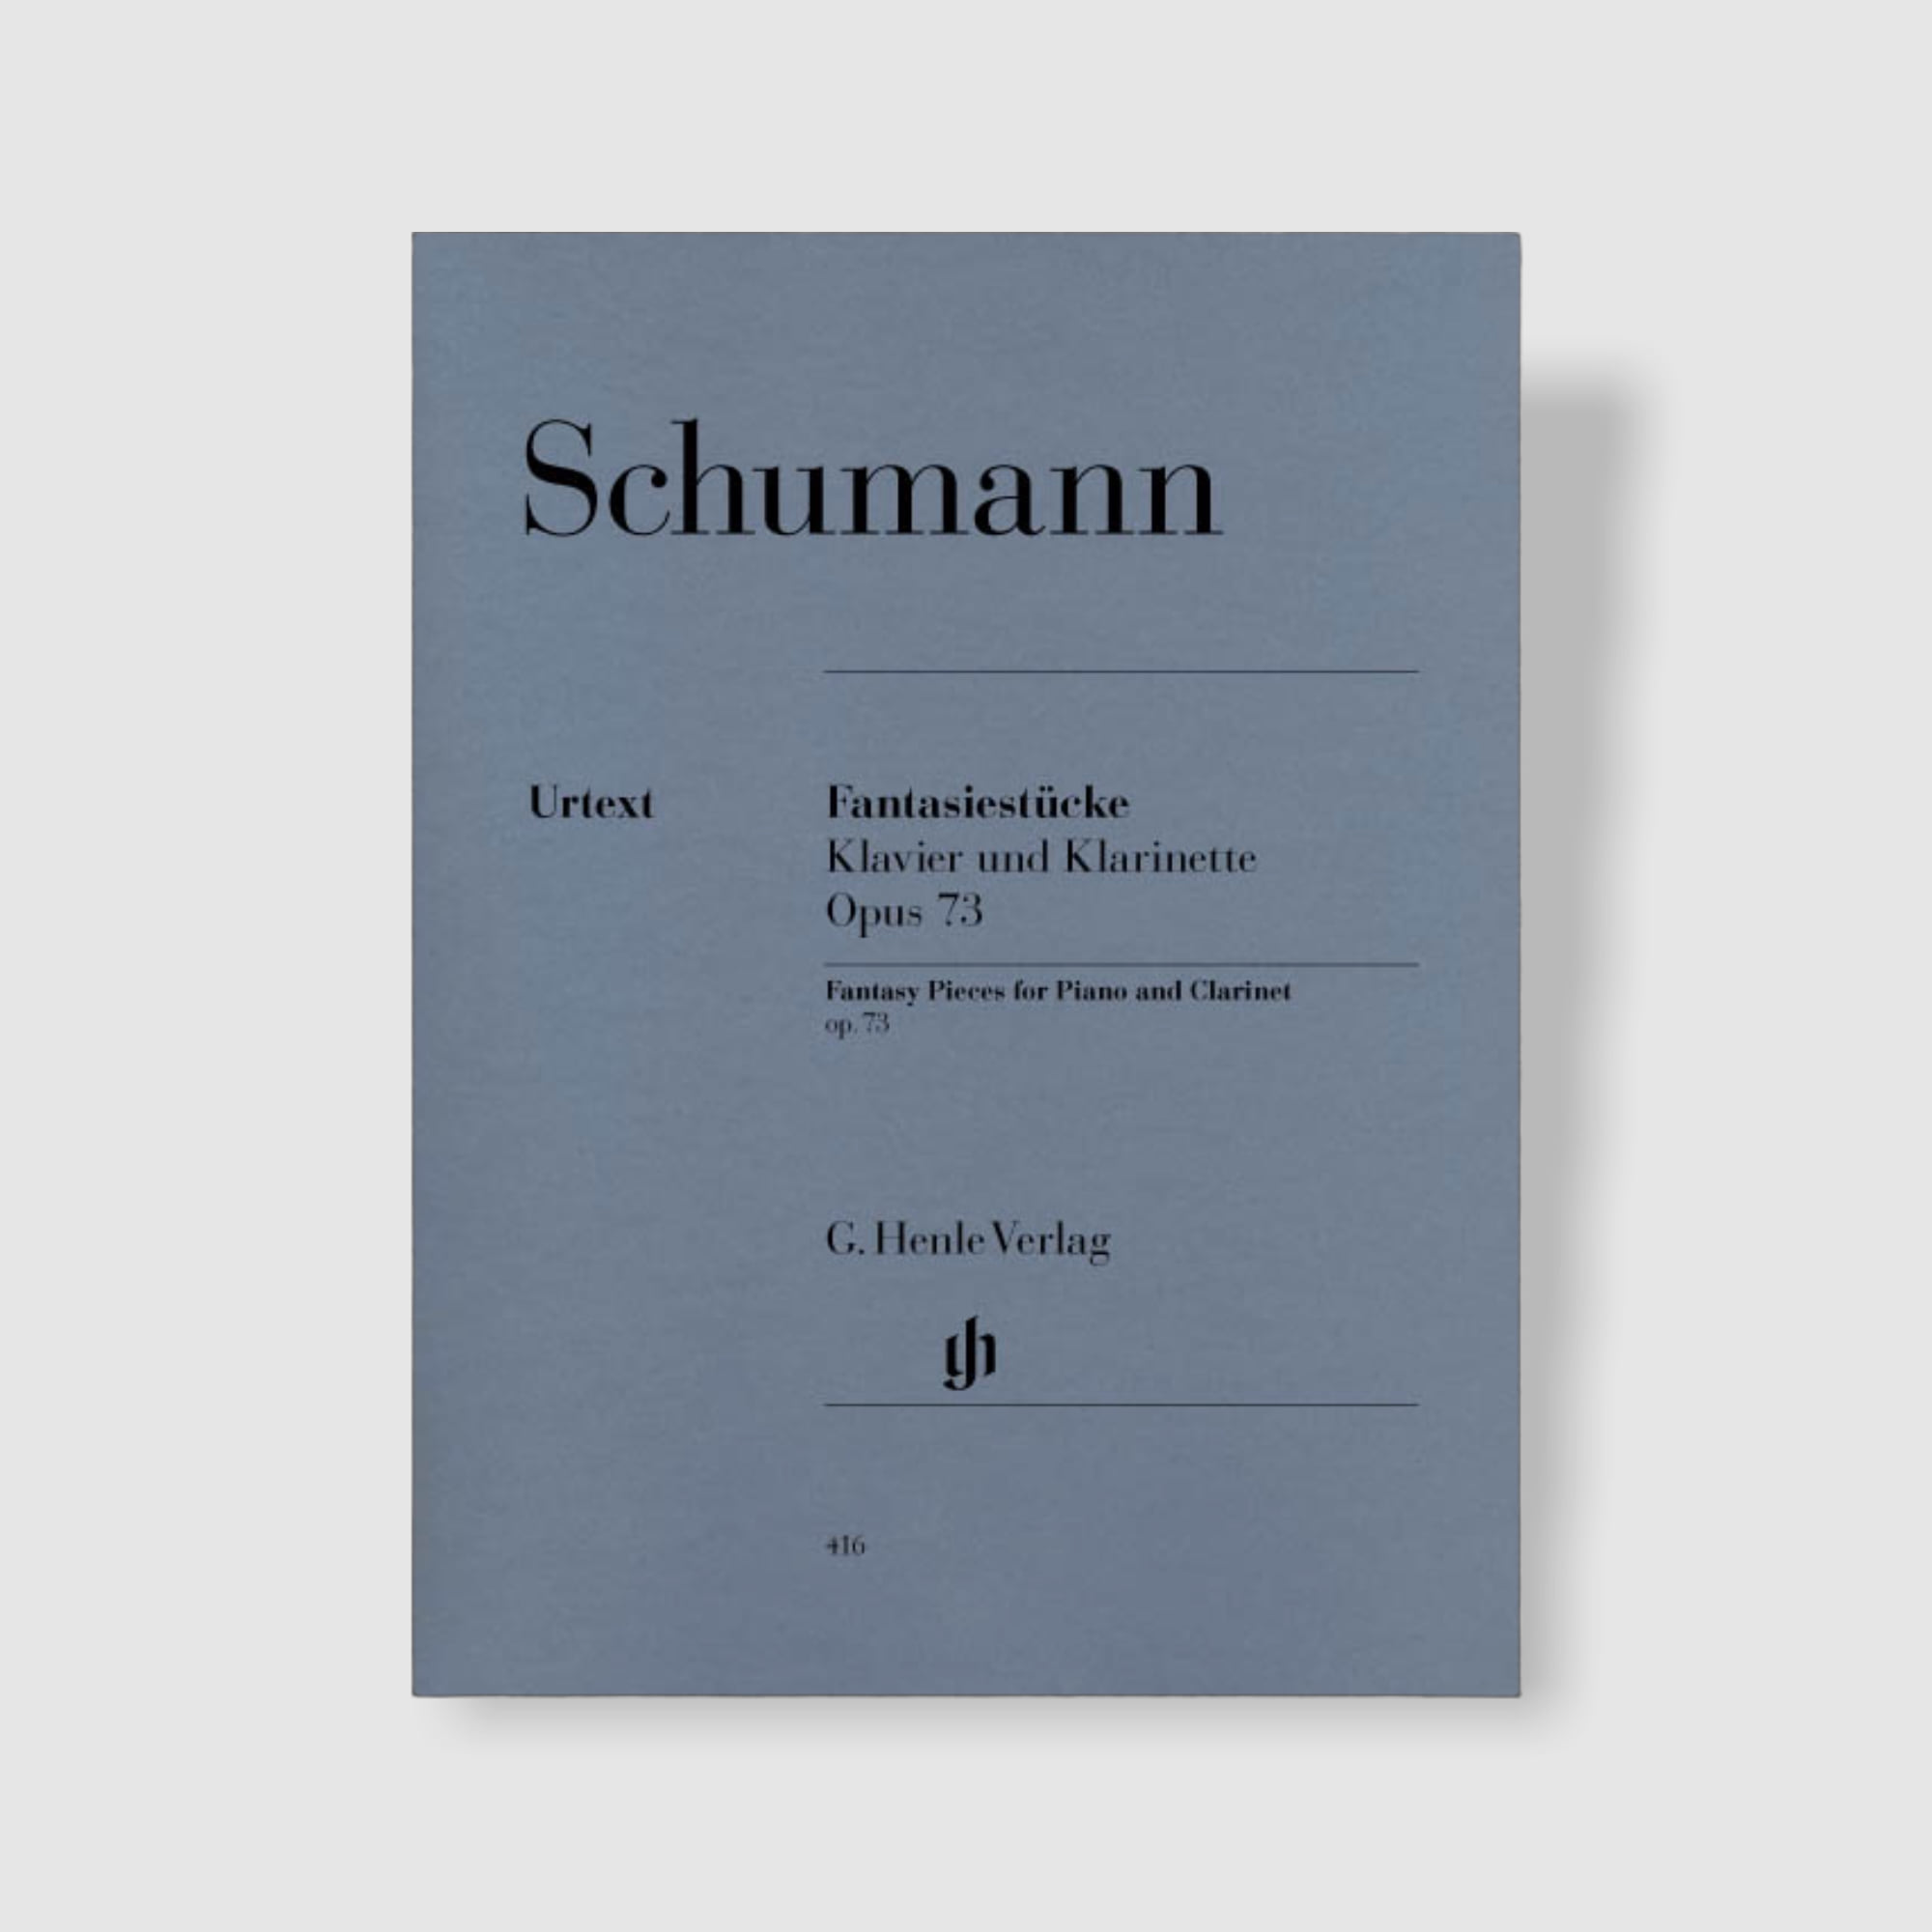 슈만 클라리넷과 피아노를 위한 환상곡 Op.73